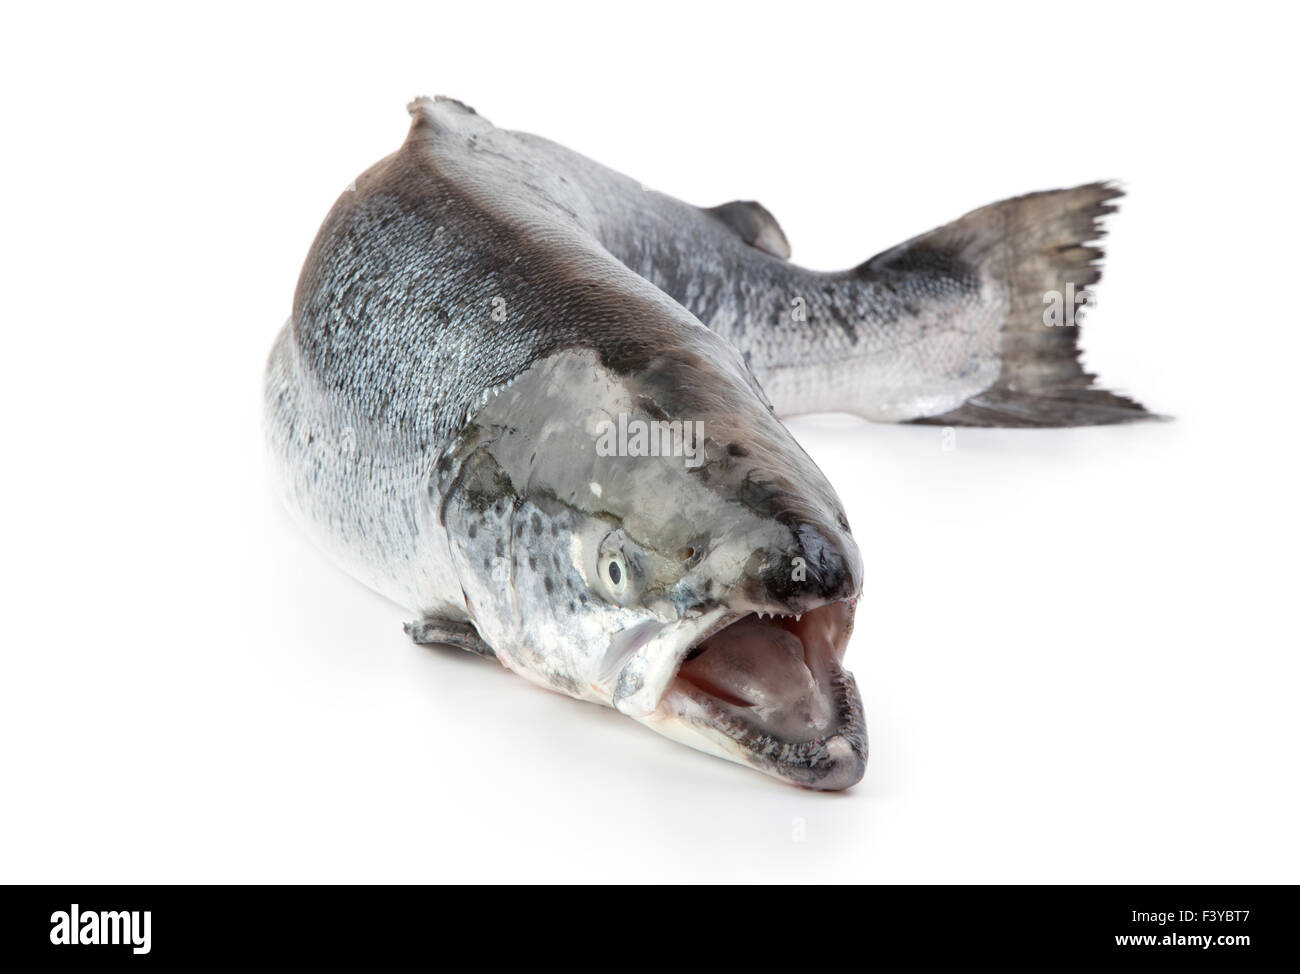 Salmon on the white background Stock Photo